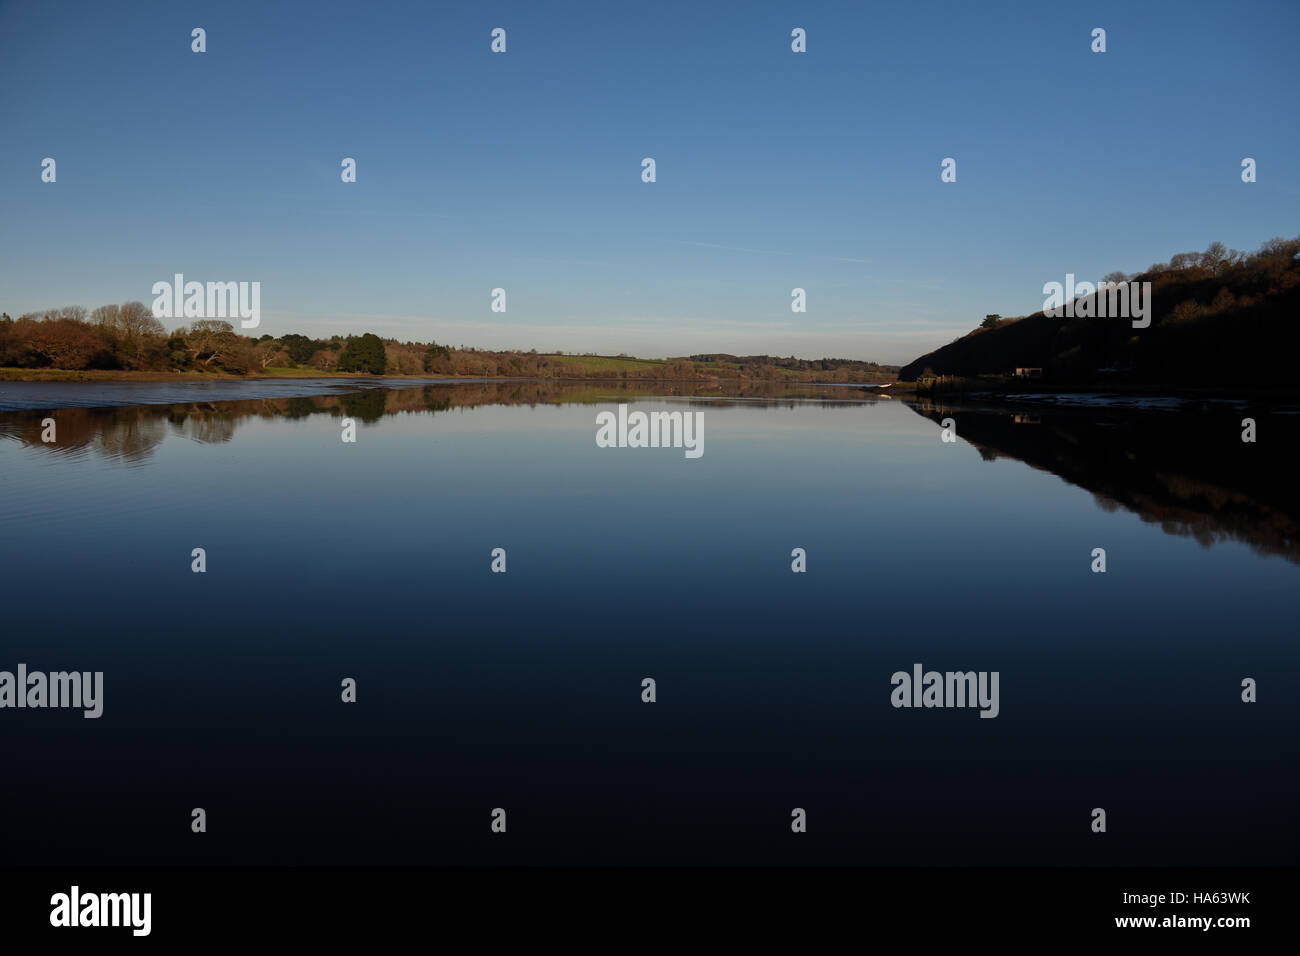 Blauer Himmel und River Bank spiegelt sich in vollkommen ruhig Wasser Stockfoto